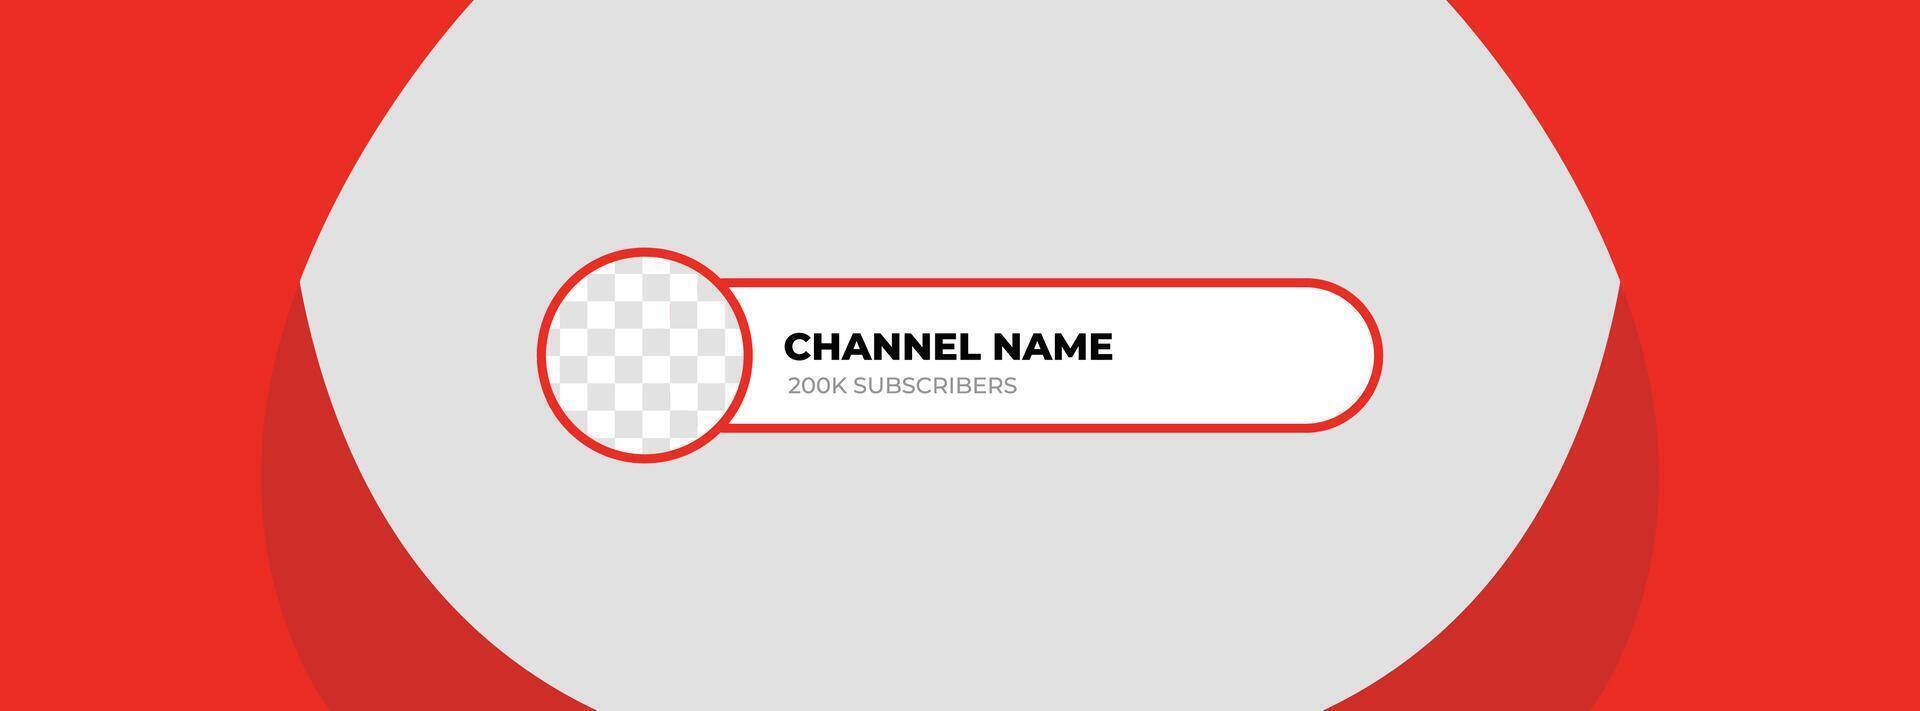 youtube kanaal naam lager derde. rood uitzending banier voor kanaal youtube vector